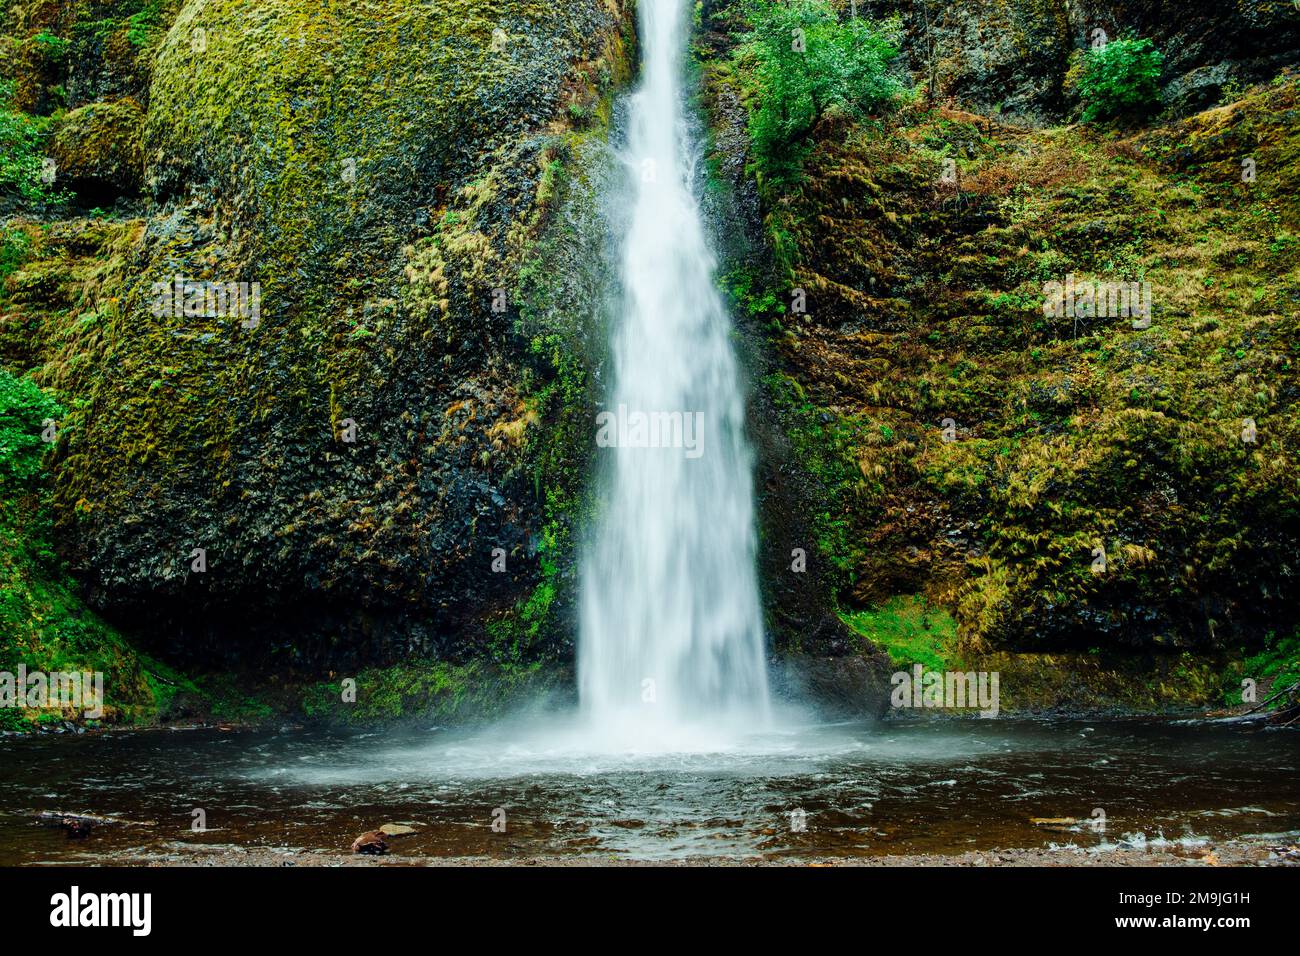 Formation de cascades et de rochers, Multnomah Falls, gorge du fleuve Columbia, Oregon, États-Unis Banque D'Images